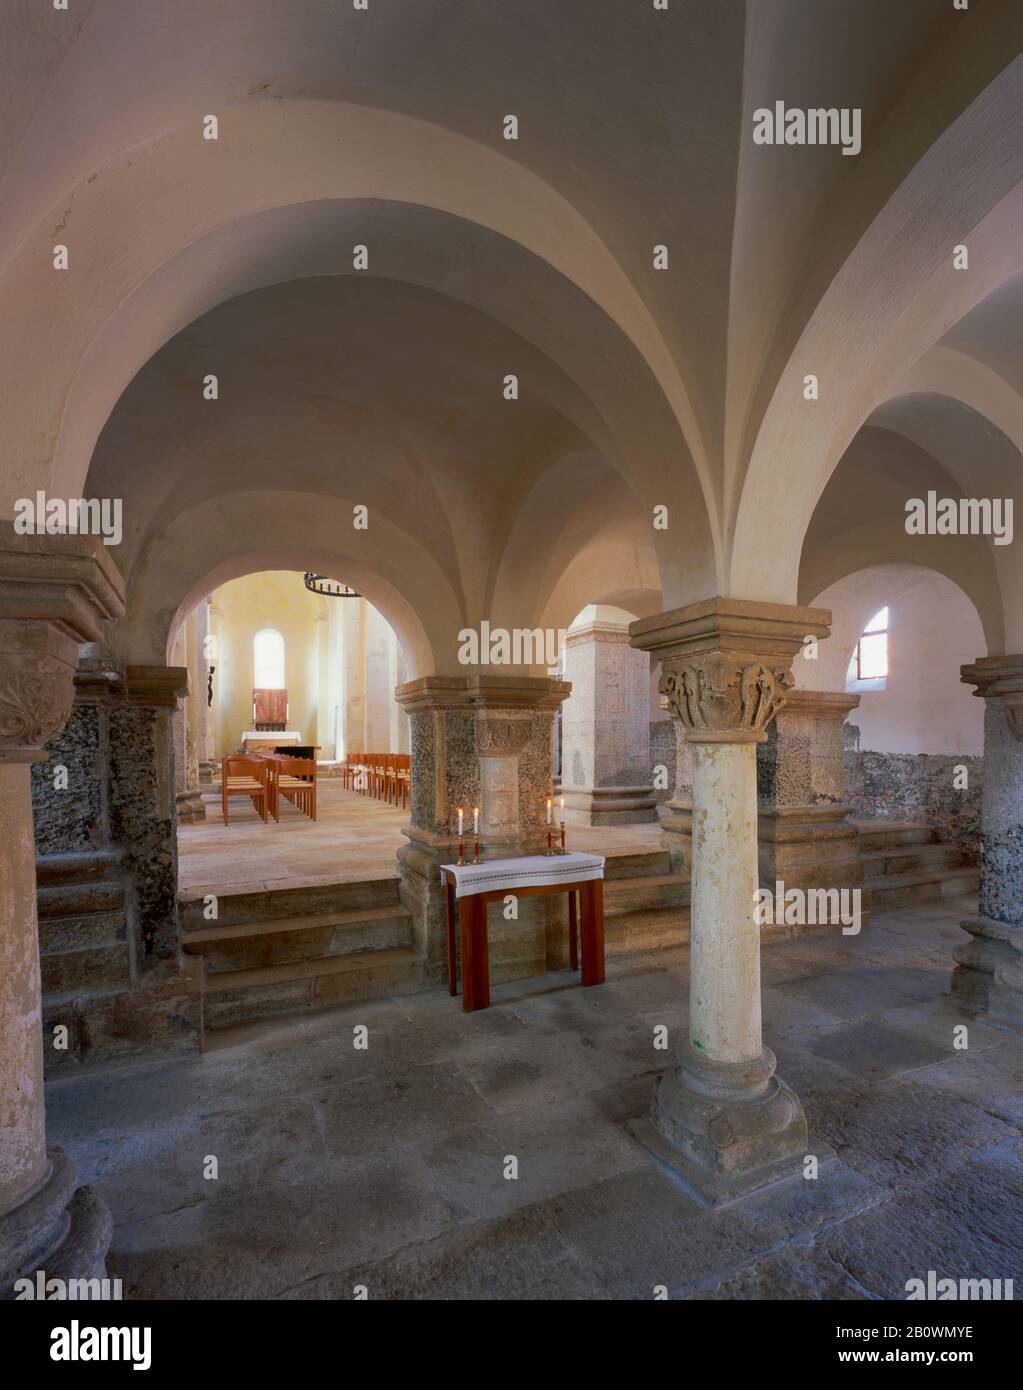 Basilique romane de Saint-Gangolf à Münchenlohra, district de Nordhausen, Thuringe, Allemagne, Europe Banque D'Images